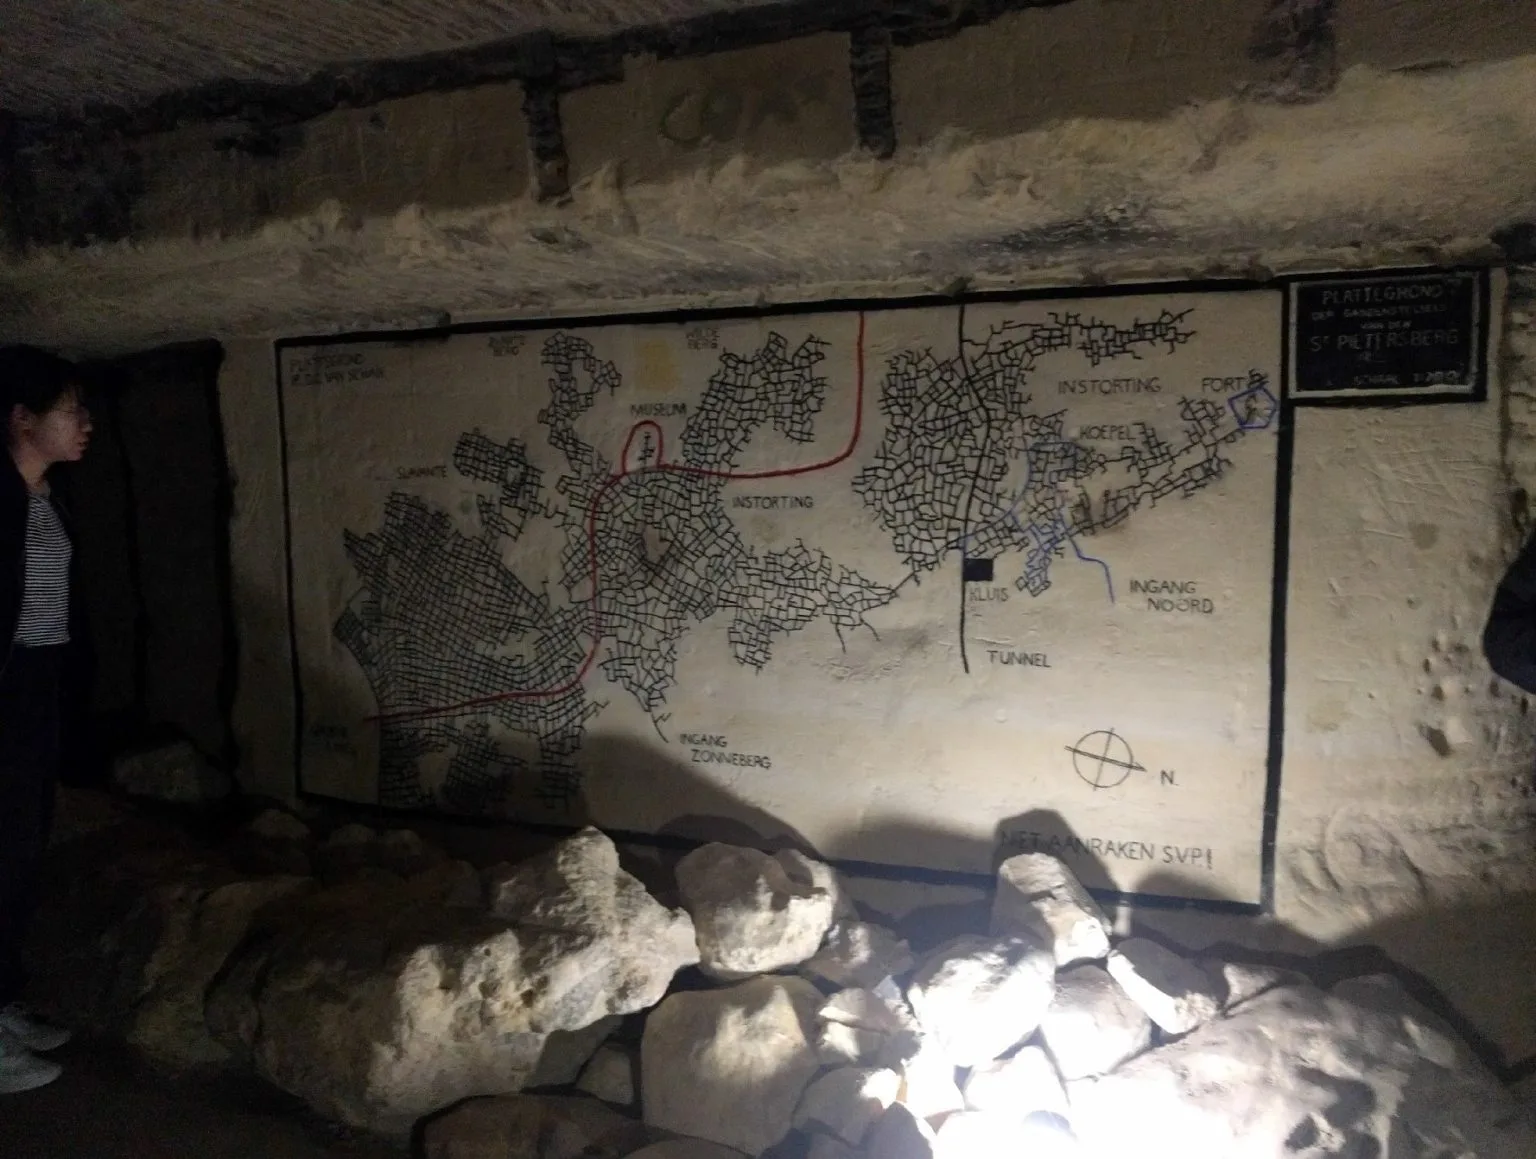 Οι απόκοσμες σπηλιές του Μάαστριχτ